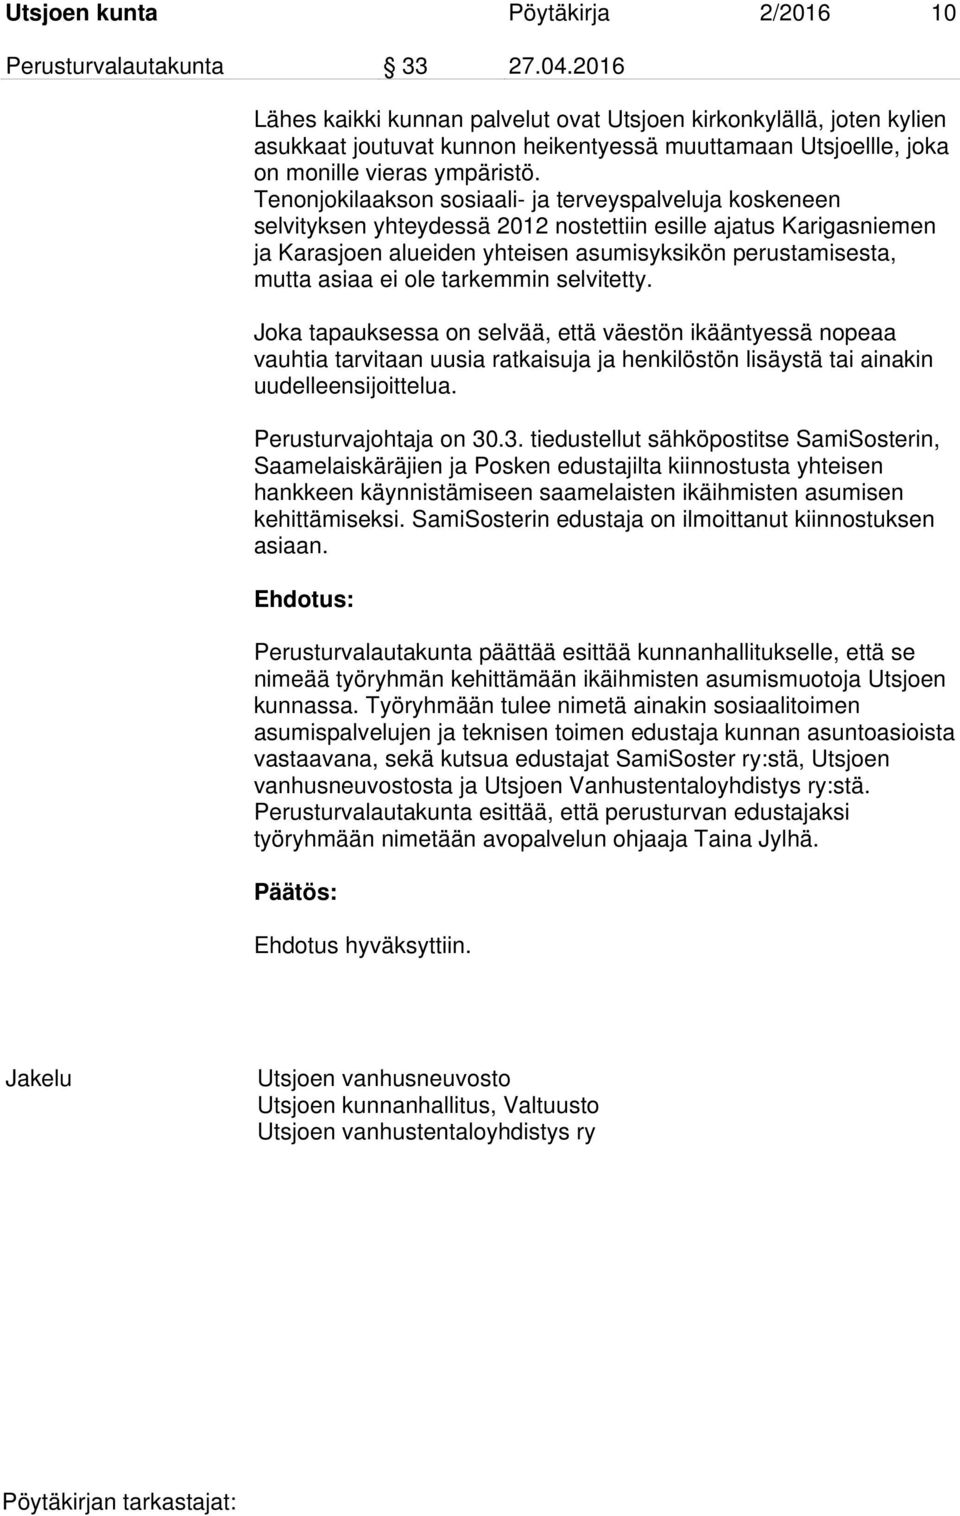 Tenonjokilaakson sosiaali- ja terveyspalveluja koskeneen selvityksen yhteydessä 2012 nostettiin esille ajatus Karigasniemen ja Karasjoen alueiden yhteisen asumisyksikön perustamisesta, mutta asiaa ei